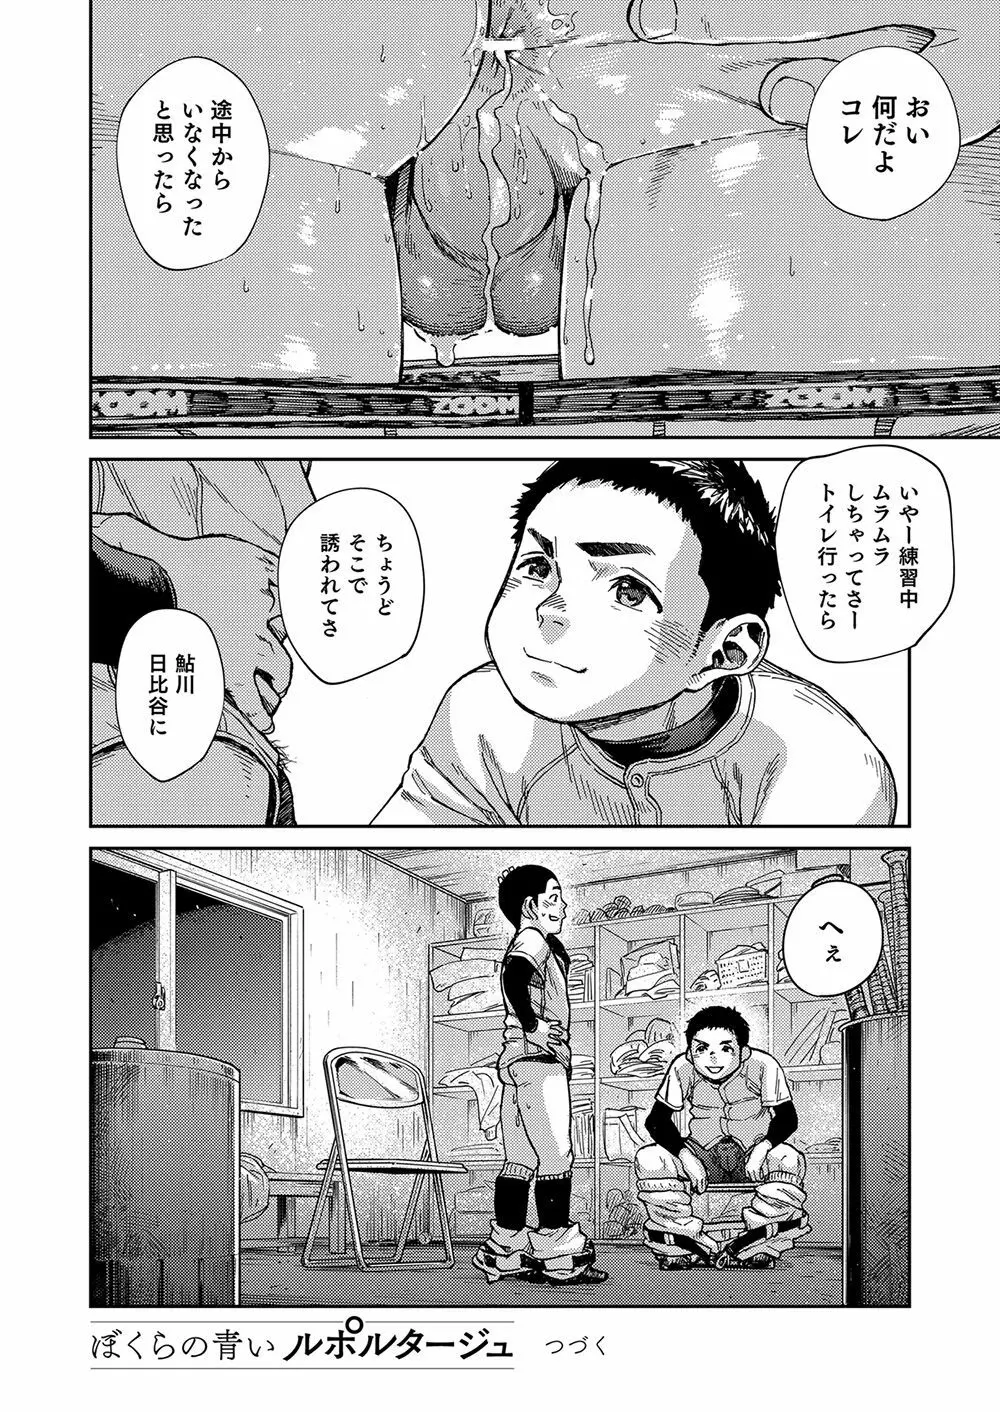 漫画少年ズーム vol.24 22ページ